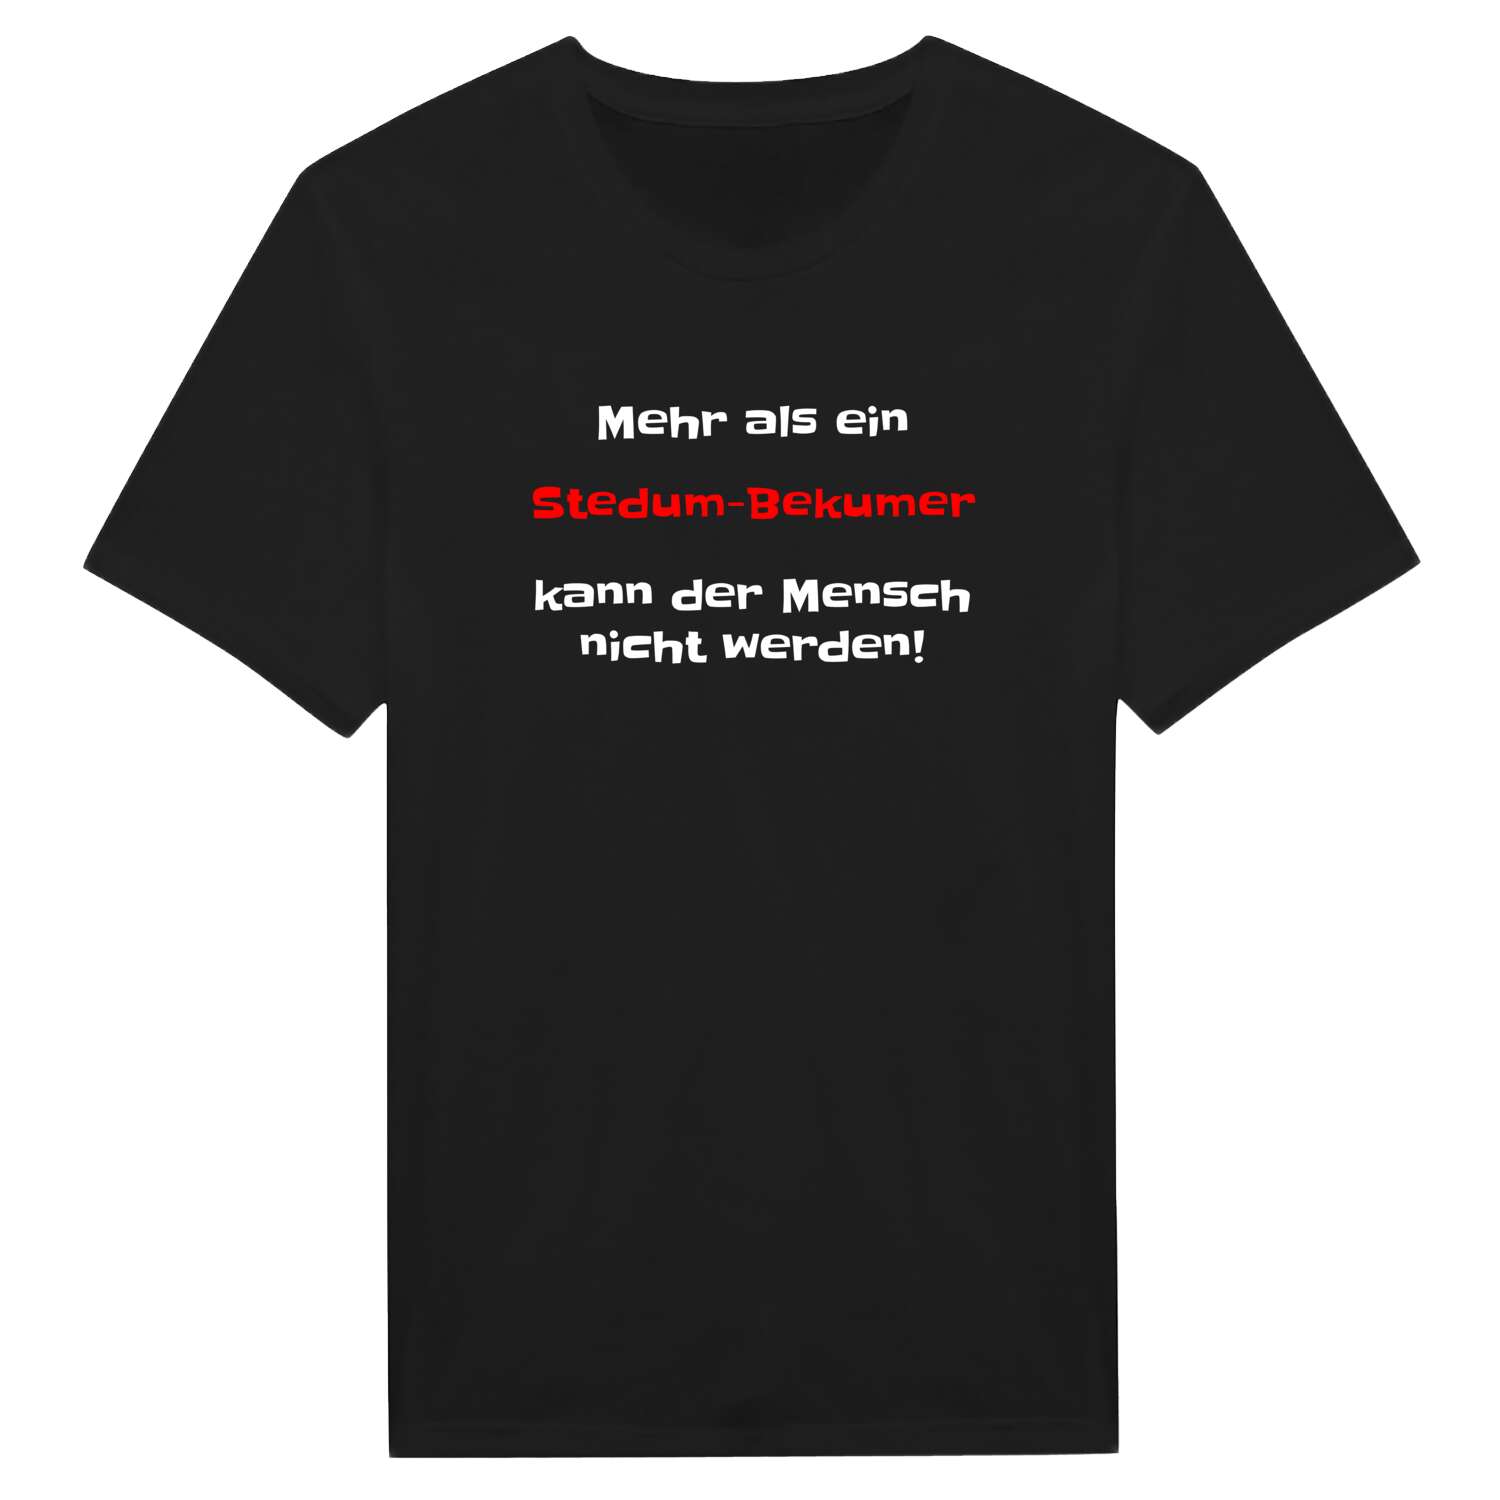 Stedum-Bekum T-Shirt »Mehr als ein«